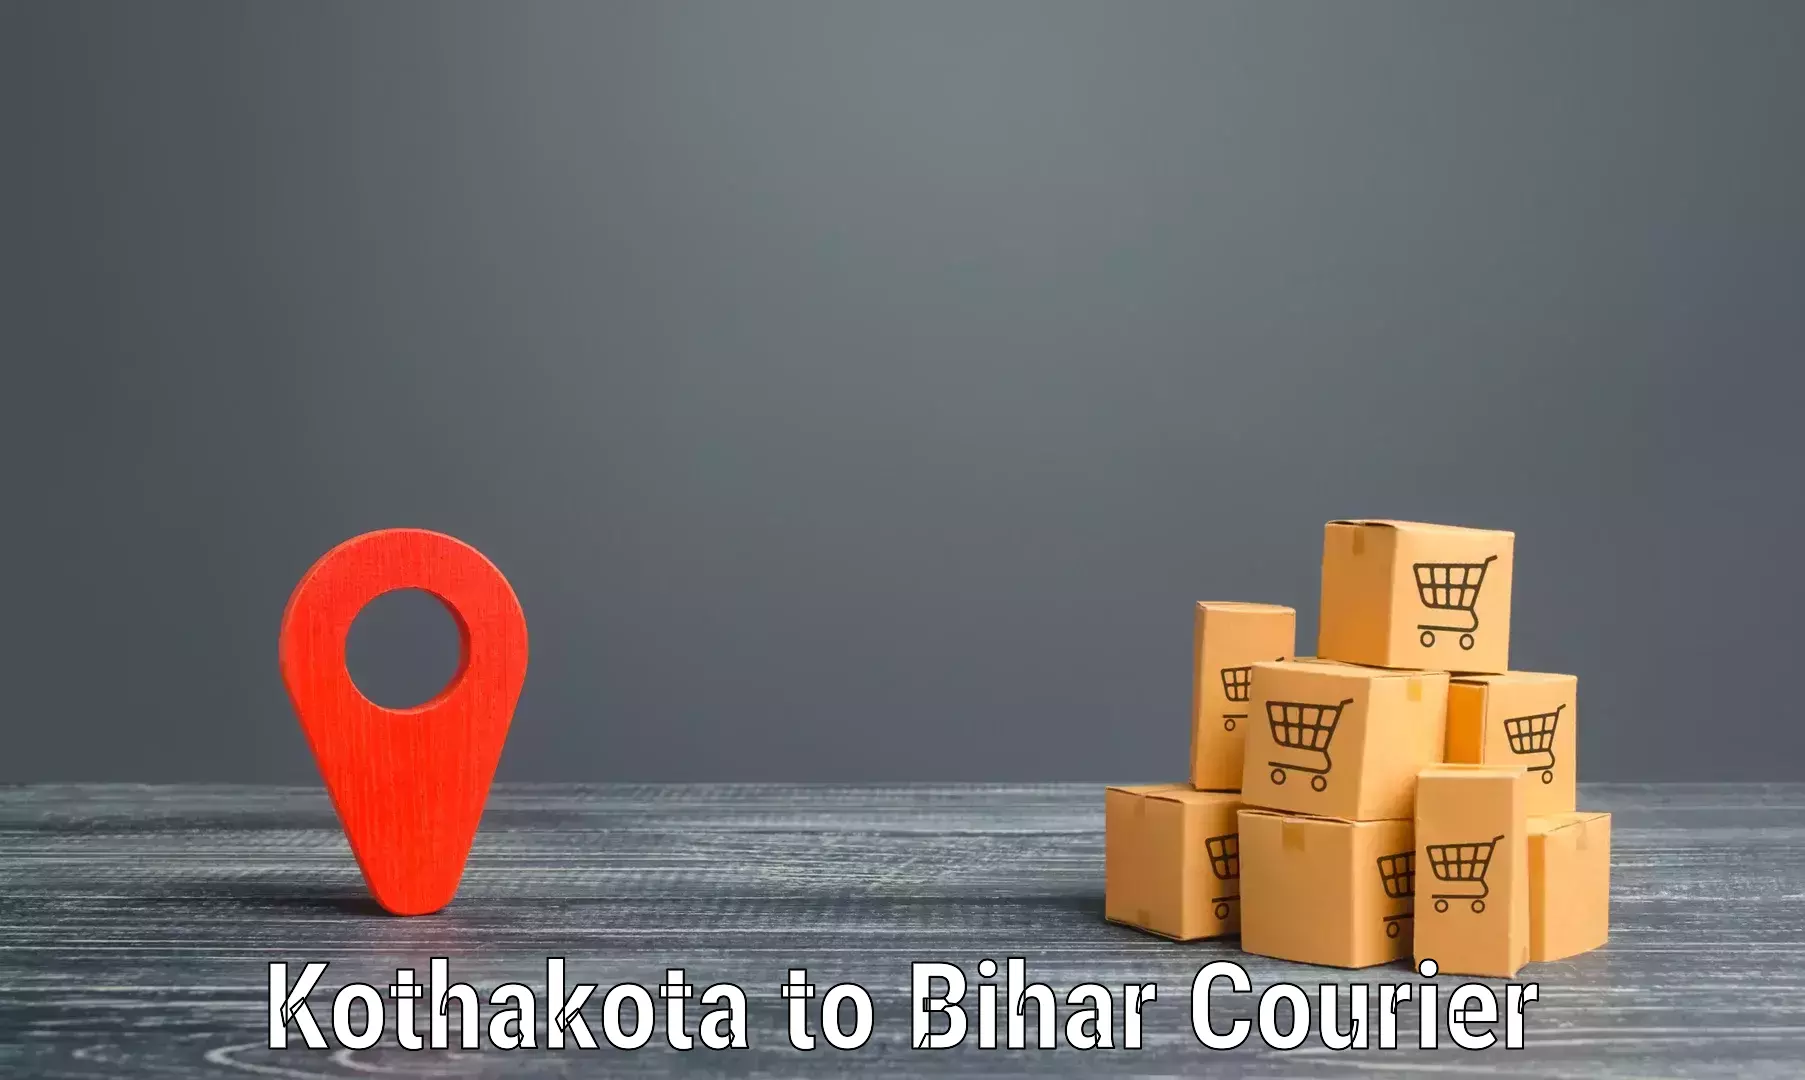 Multi-national courier services Kothakota to Dehri